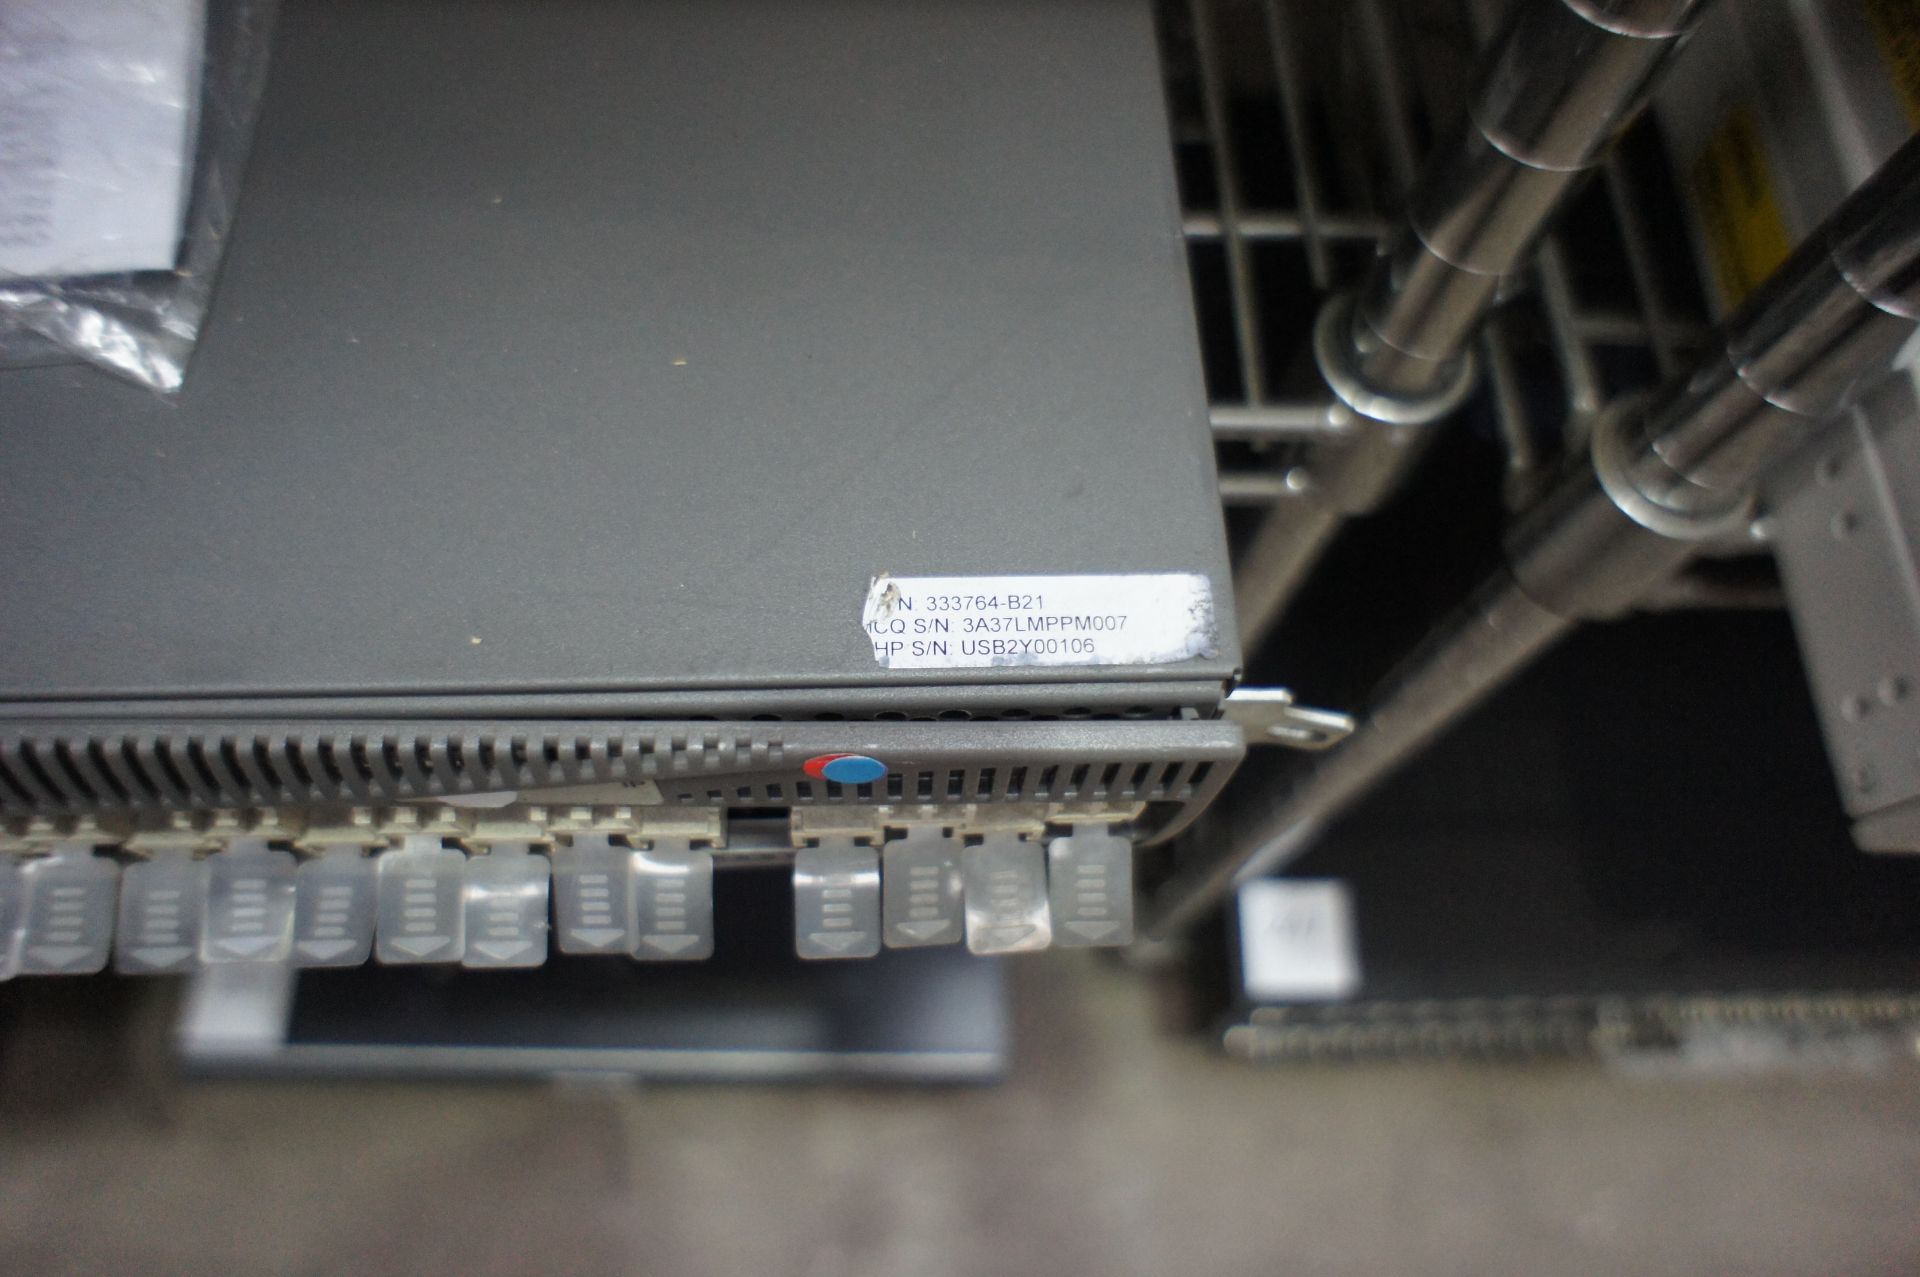 1 x HP Storage Works SAN Switch 2/32 - Image 4 of 7